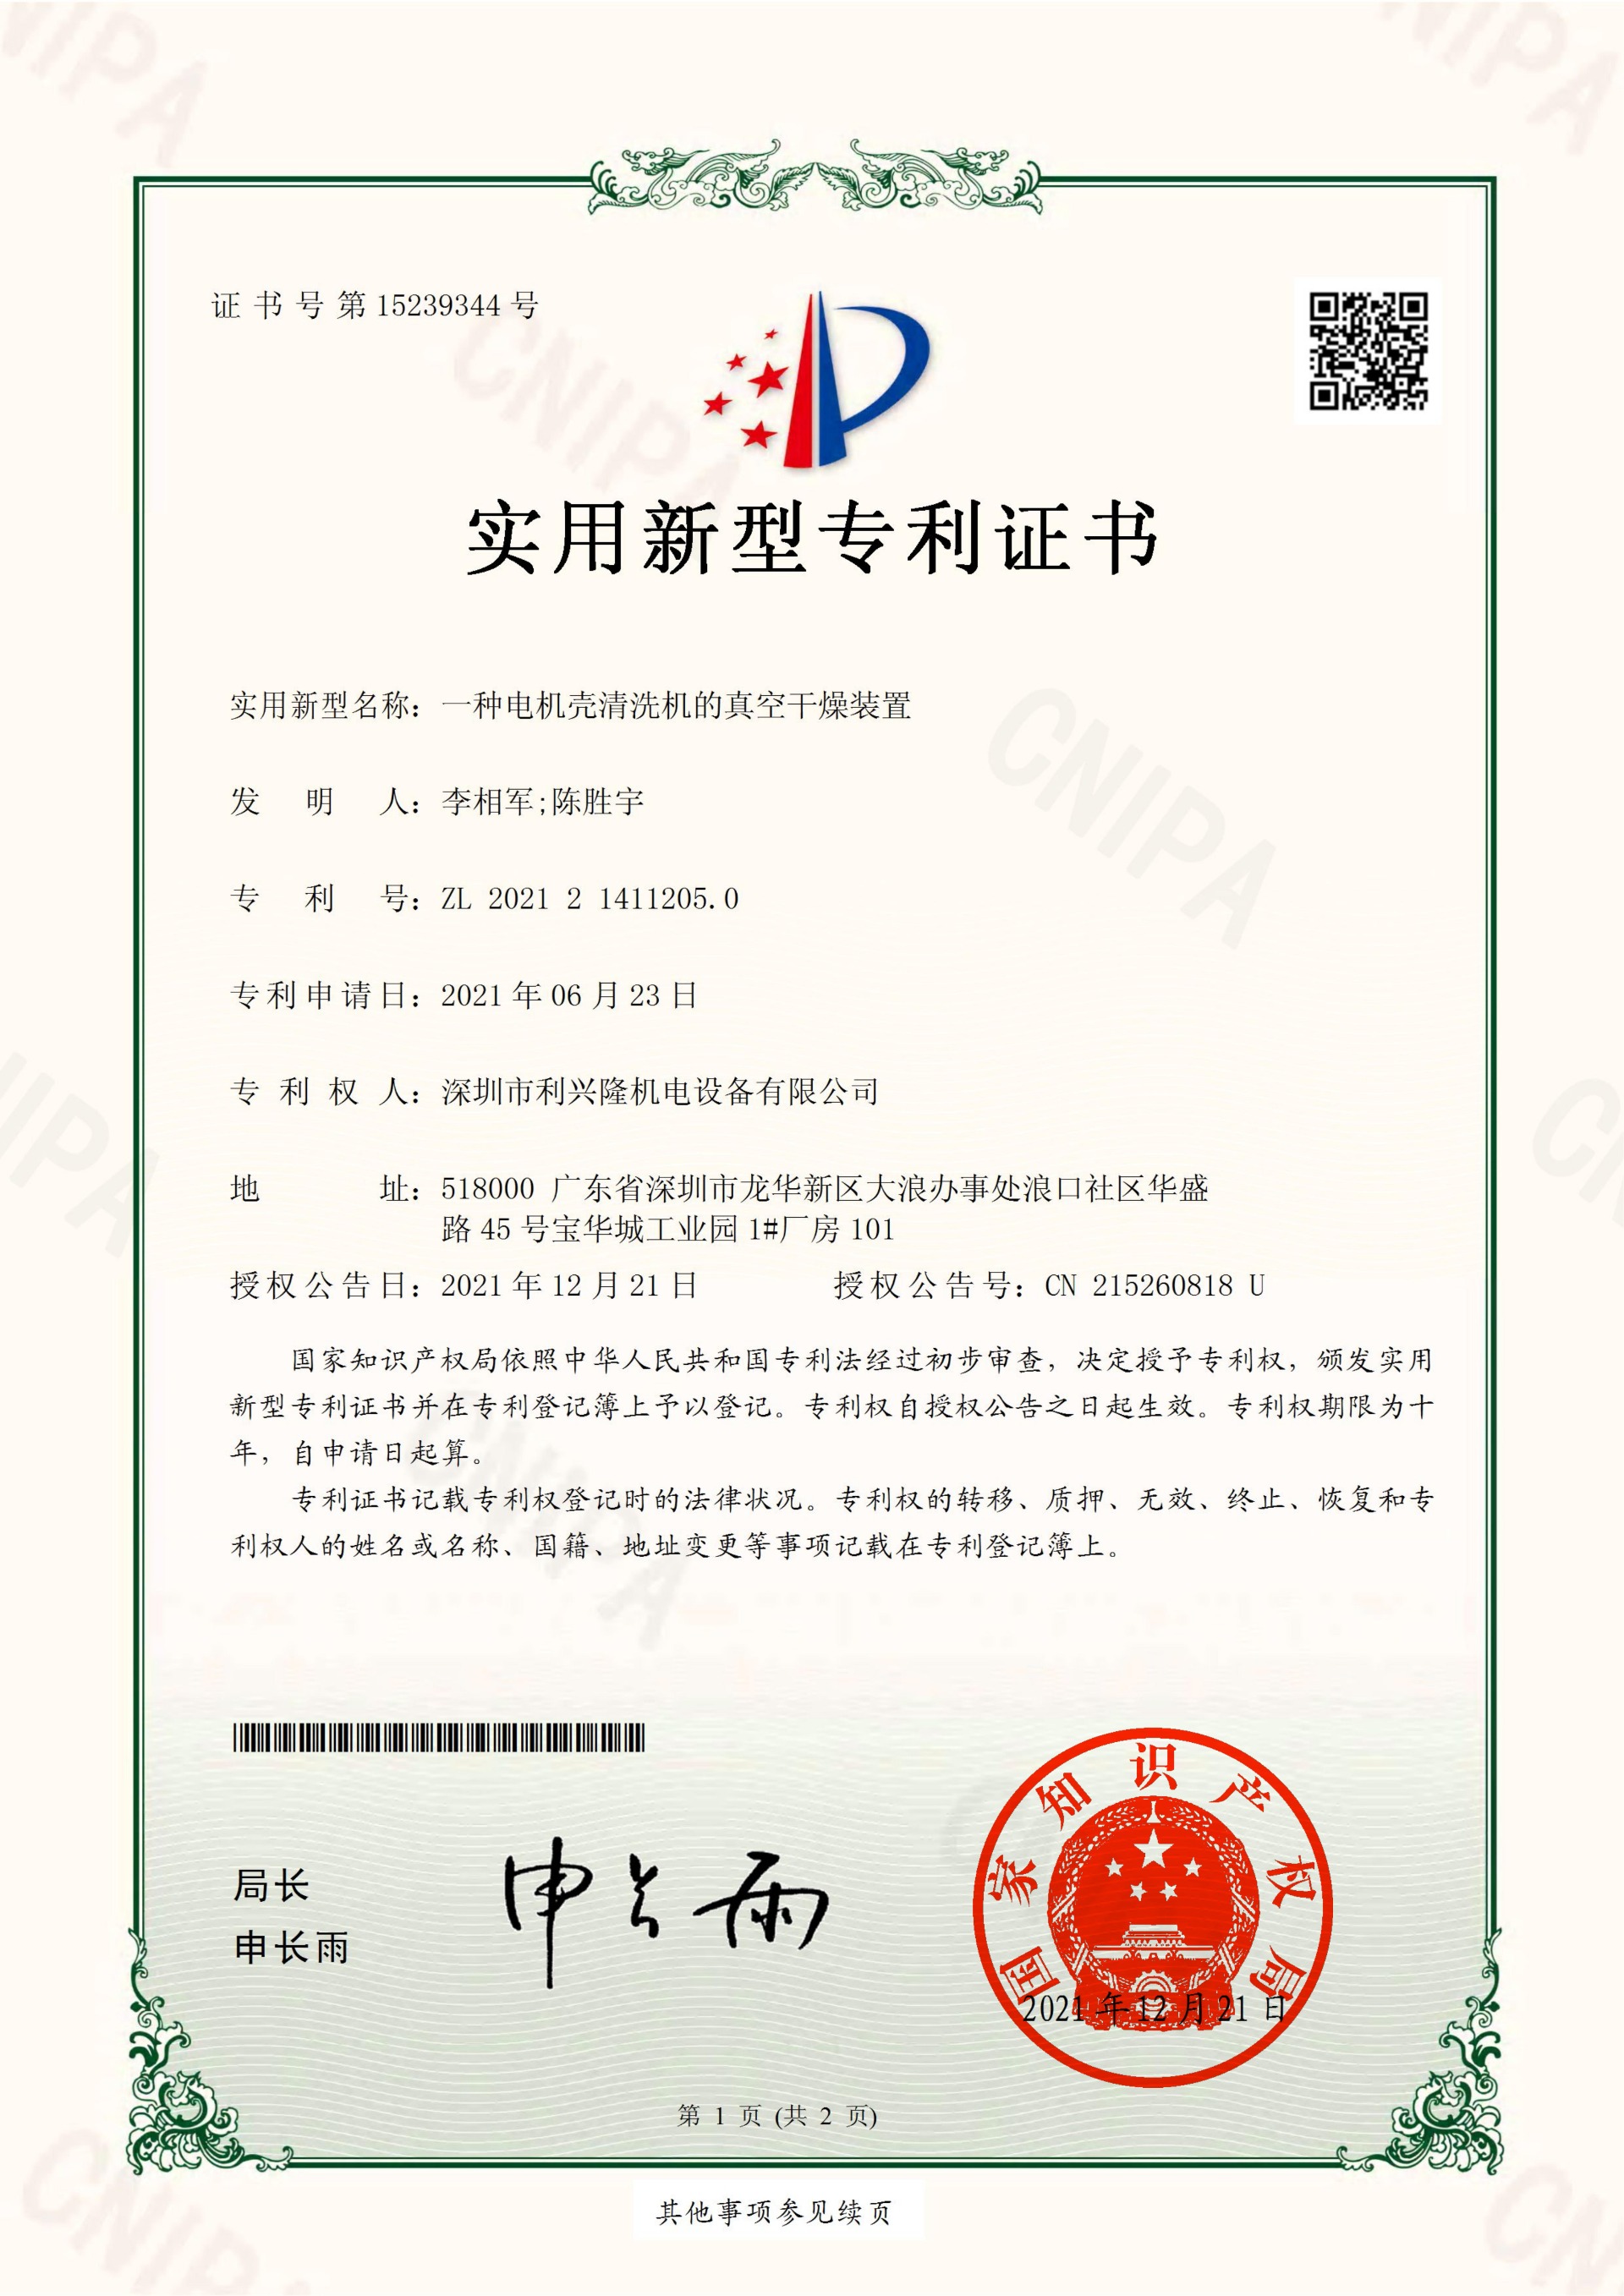 实用新型专利证书  一种电机壳清洗机的真空干燥装置-深圳市利兴隆机电设备有限公司_00